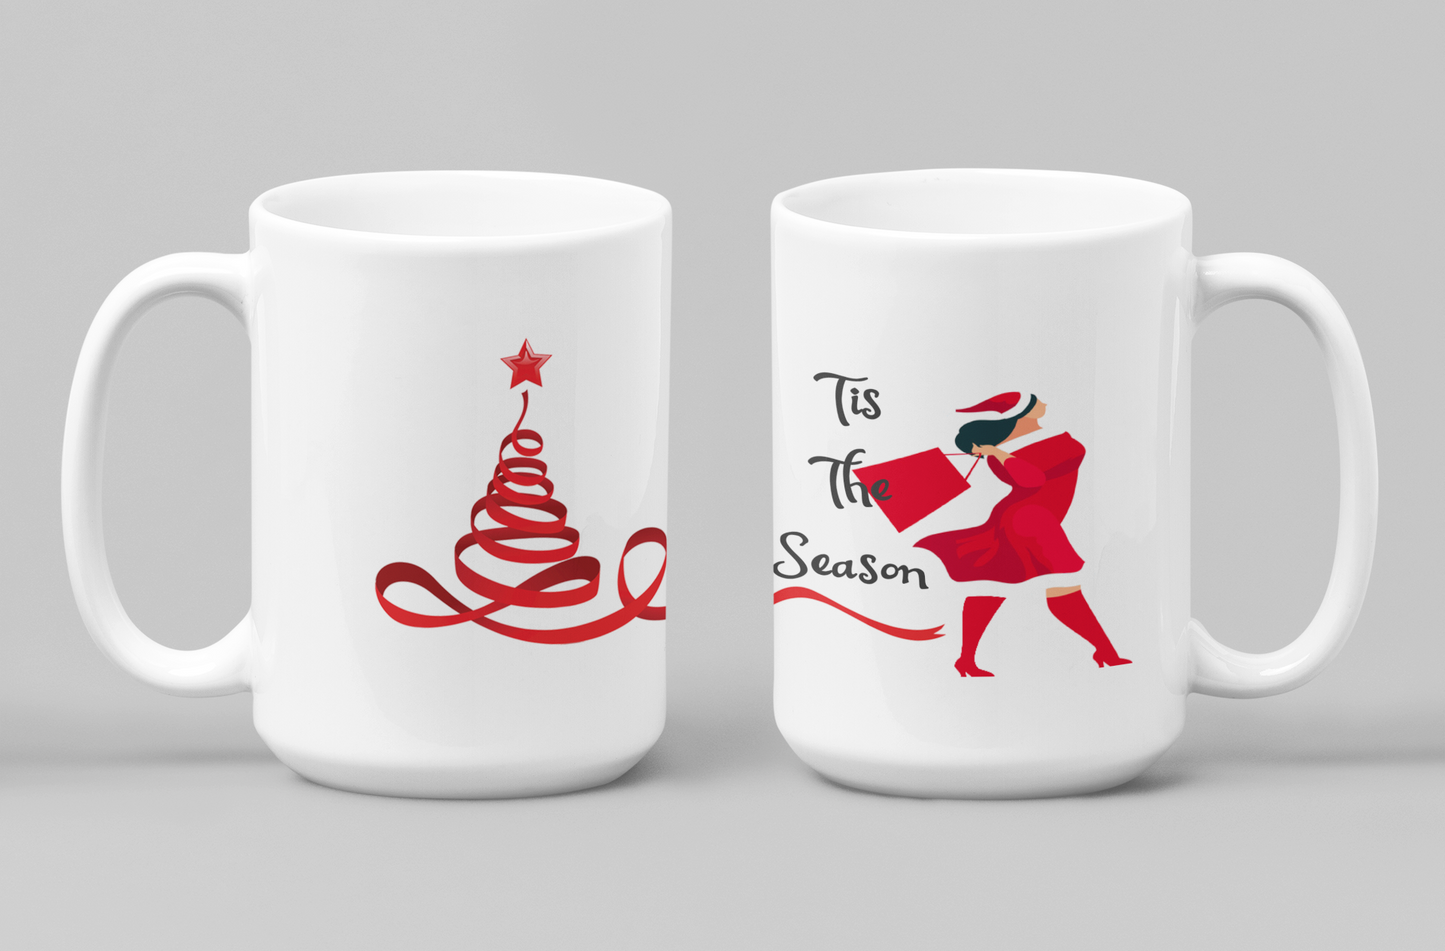 Tis The Season of Christmas Ceramic Mug